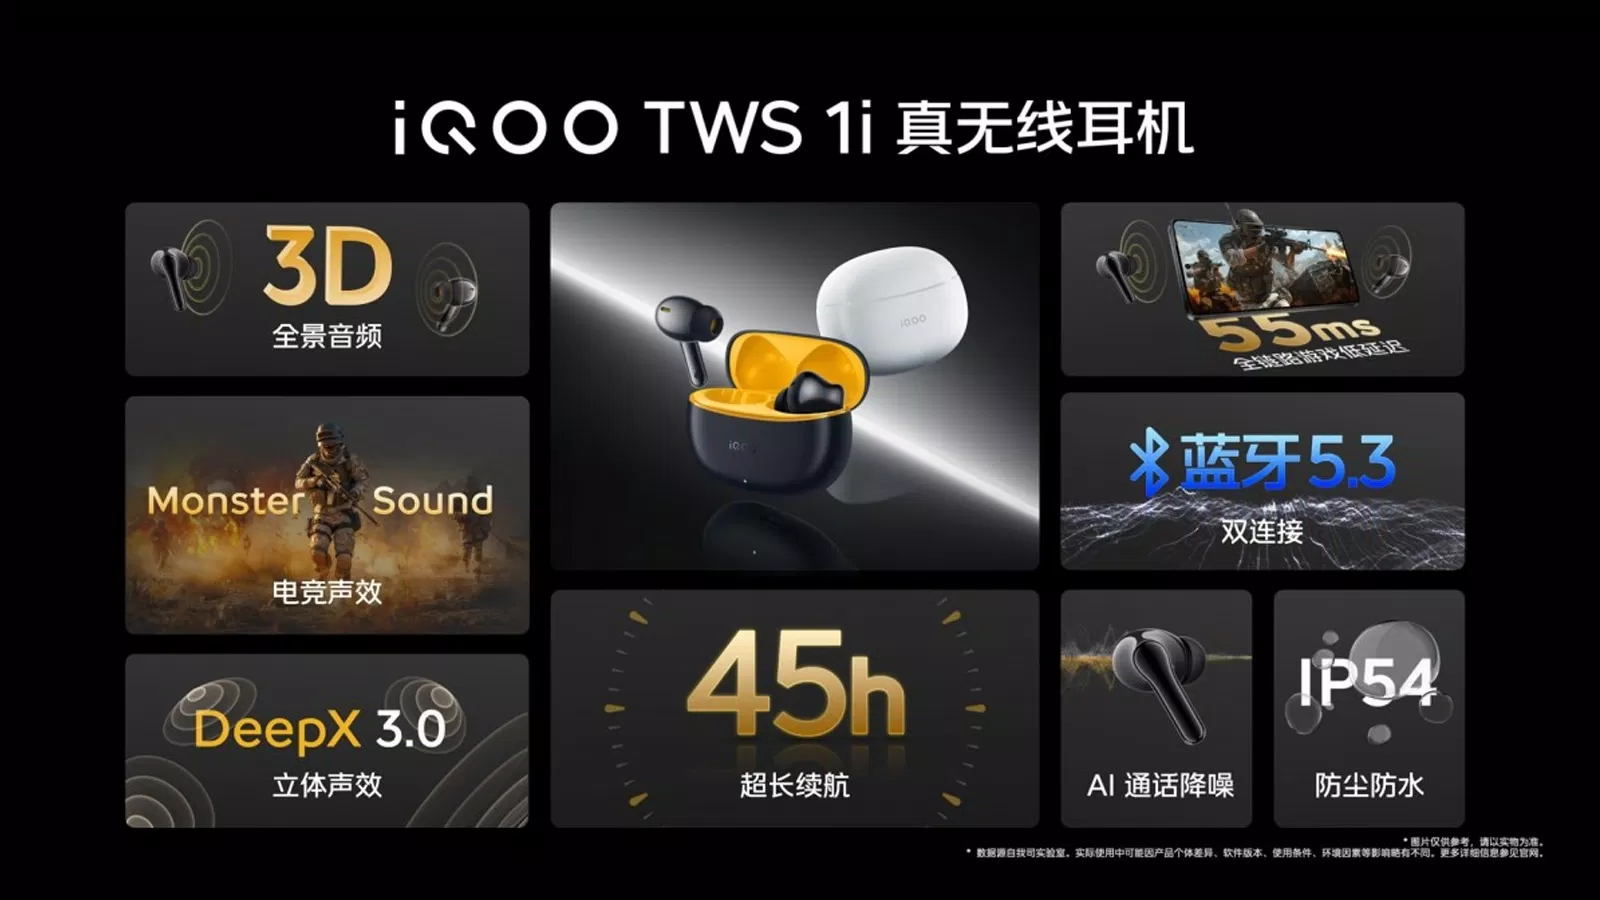 iQOO TWS 1i sở hữu nhiều tính năng thú vị giúp bạn trải nghiệm âm thanh tuyệt hảo (Ảnh: Internet)